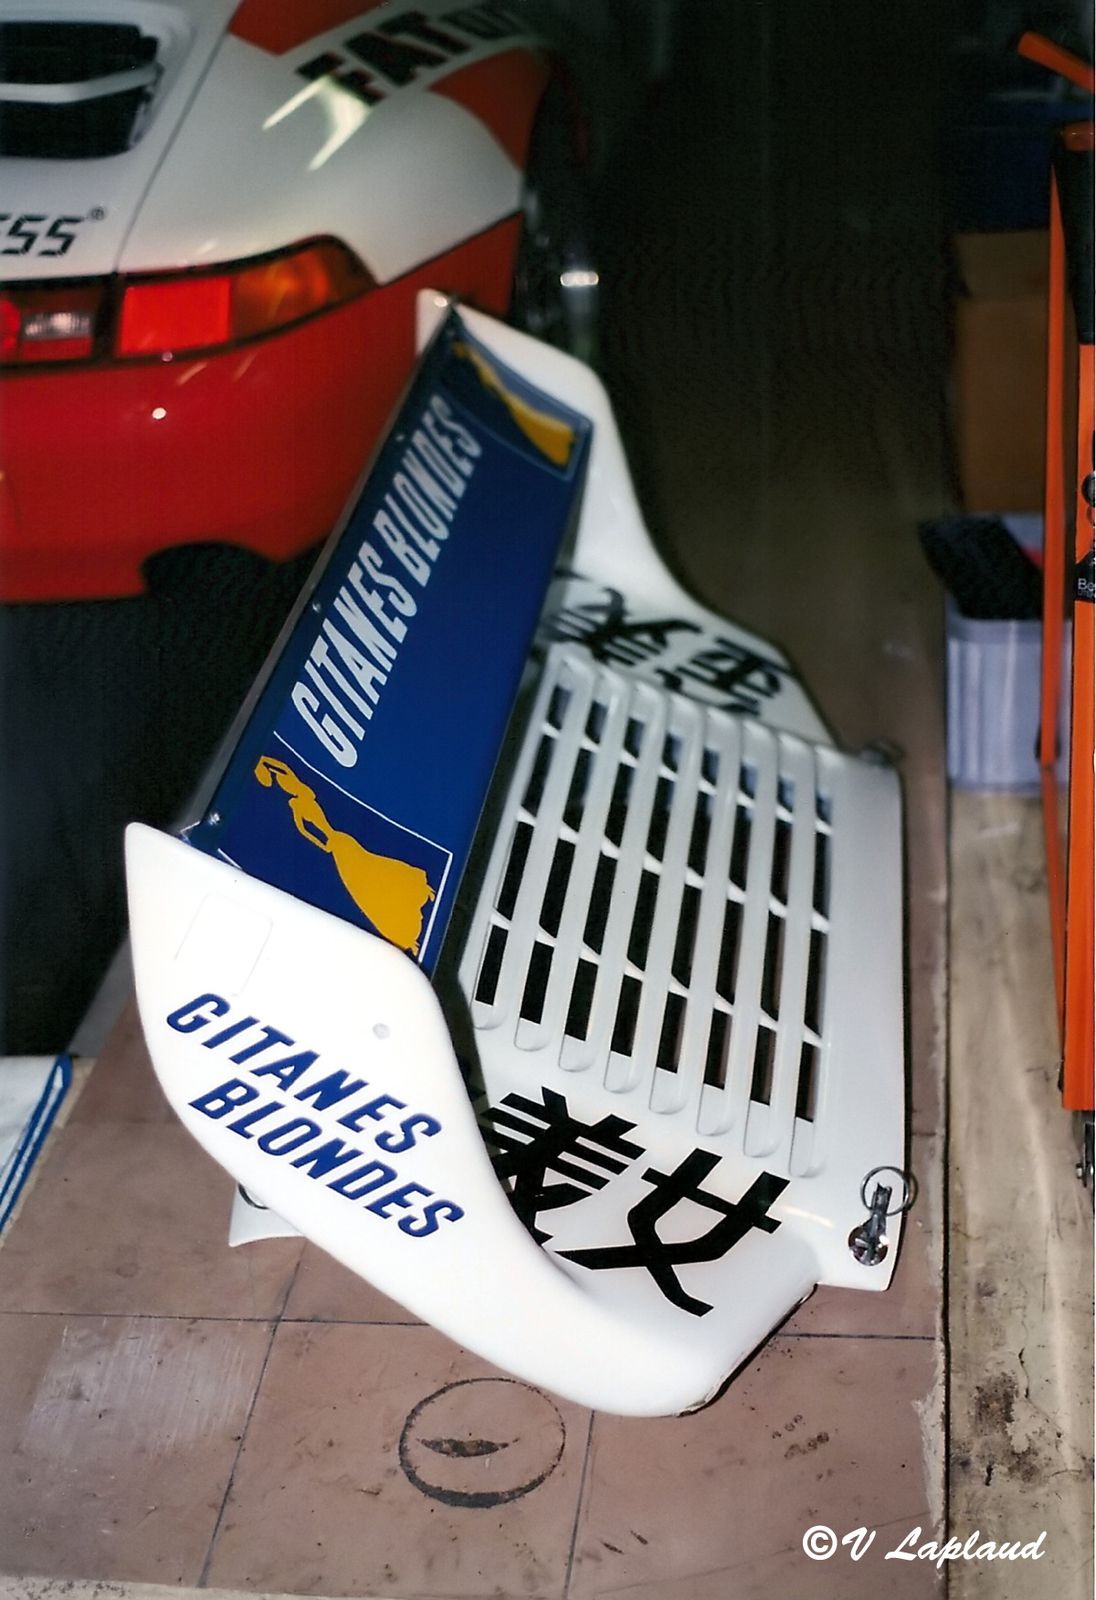 Porsche 911 Turbo S LM 3 Heures de Zhuhai 1994, le Vigeant, Larbre Compétition.